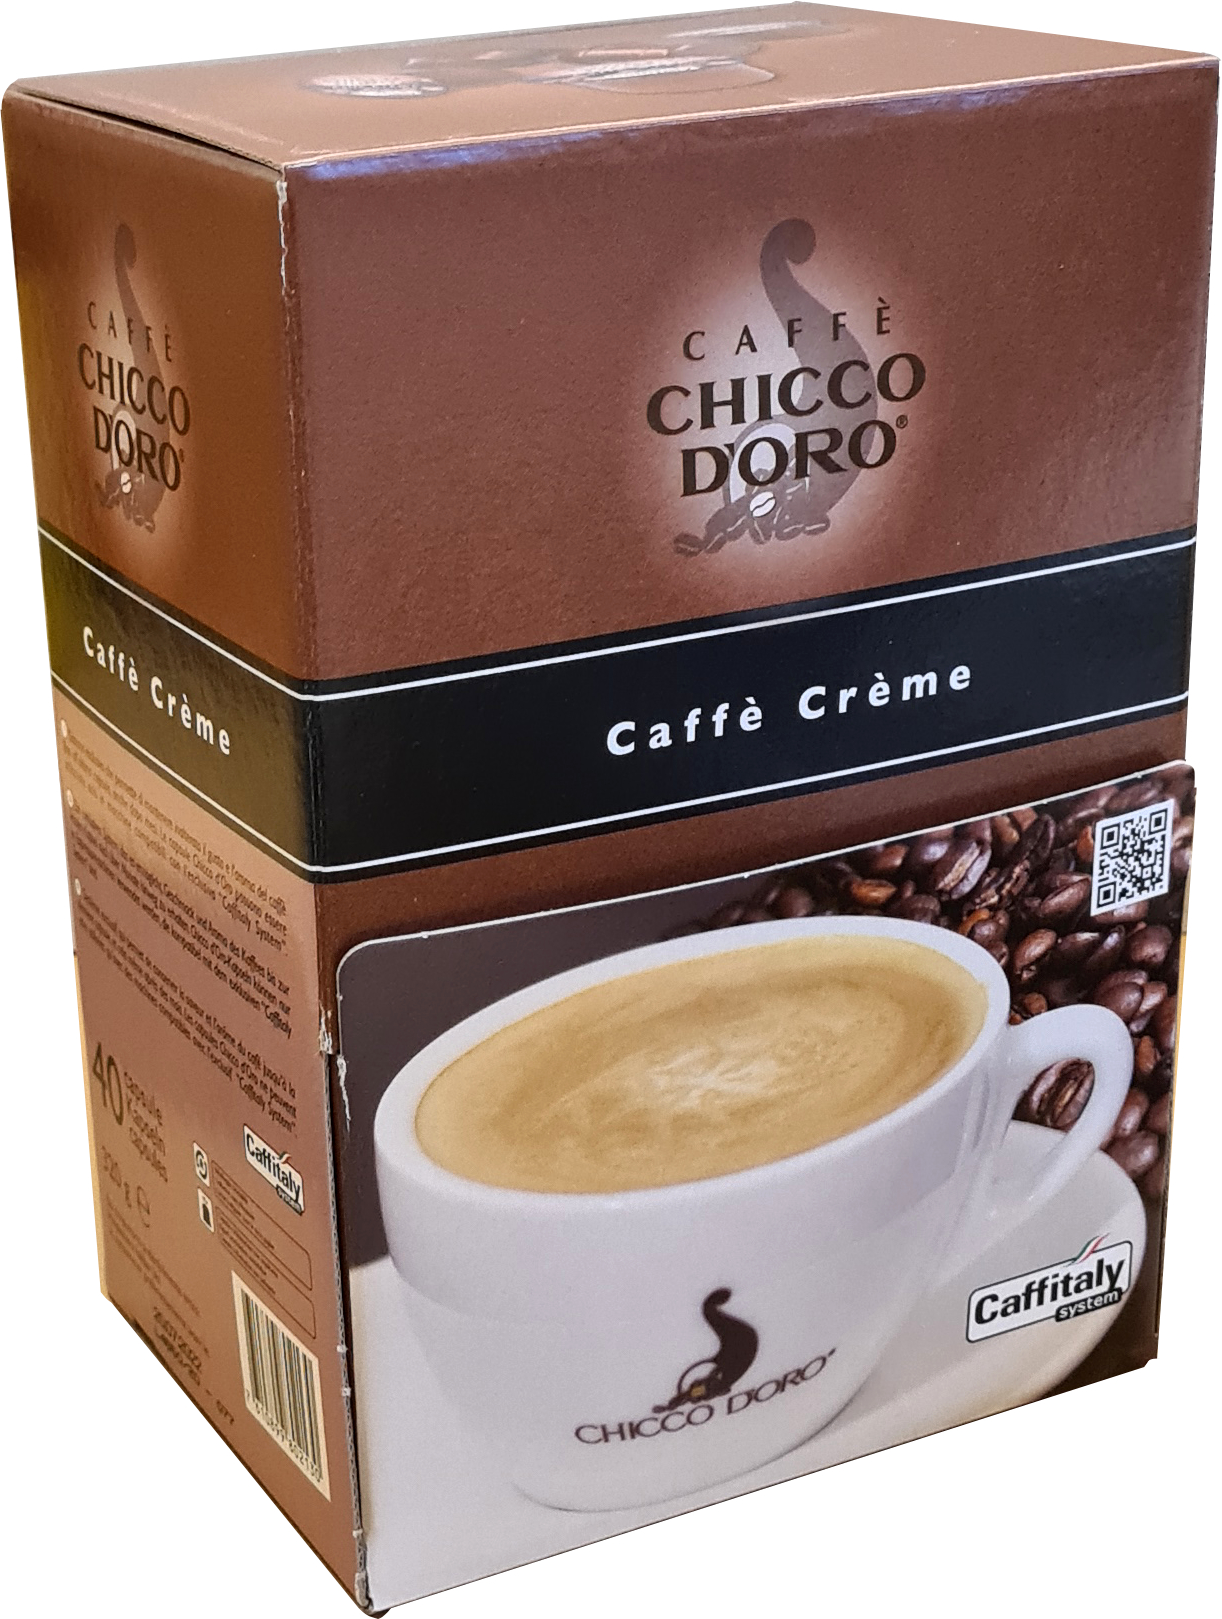 CHICCO D'ORO Café Caffitaly 802130 Caffè Crème 40 pcs.